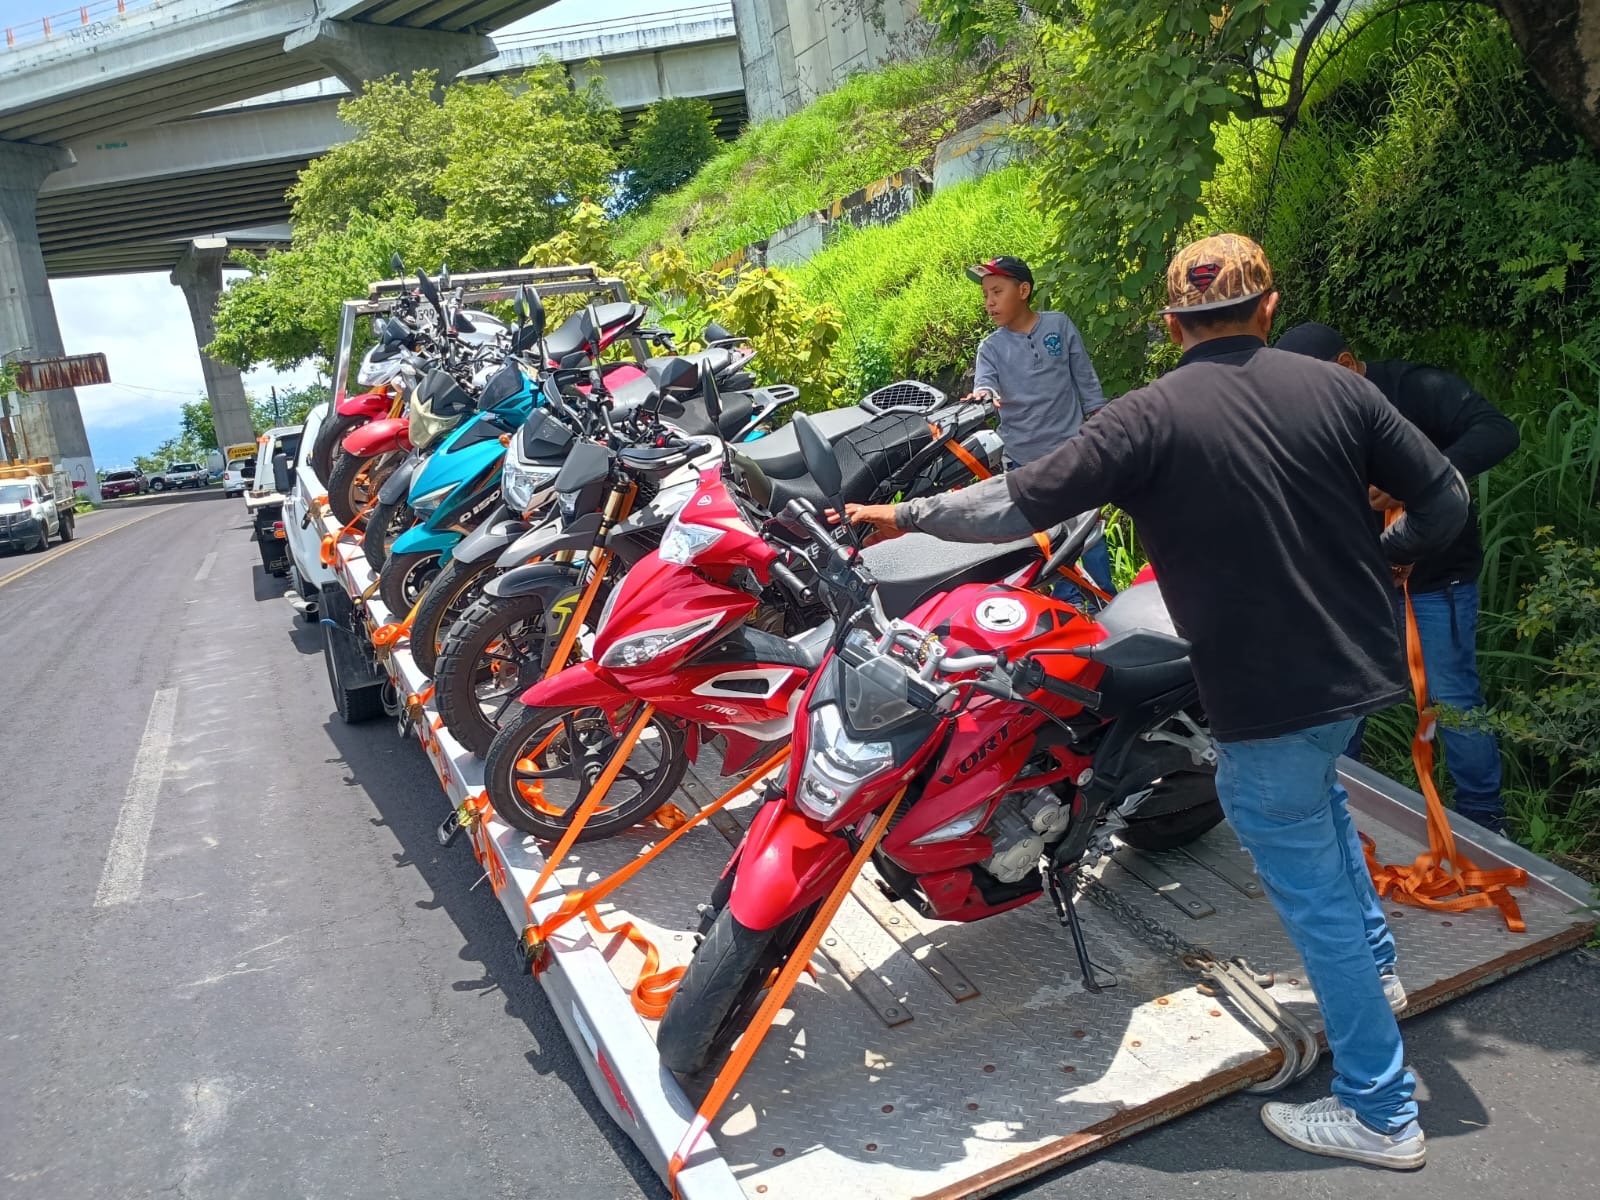 Personas en motocicleta en la calle

Descripción generada automáticamente